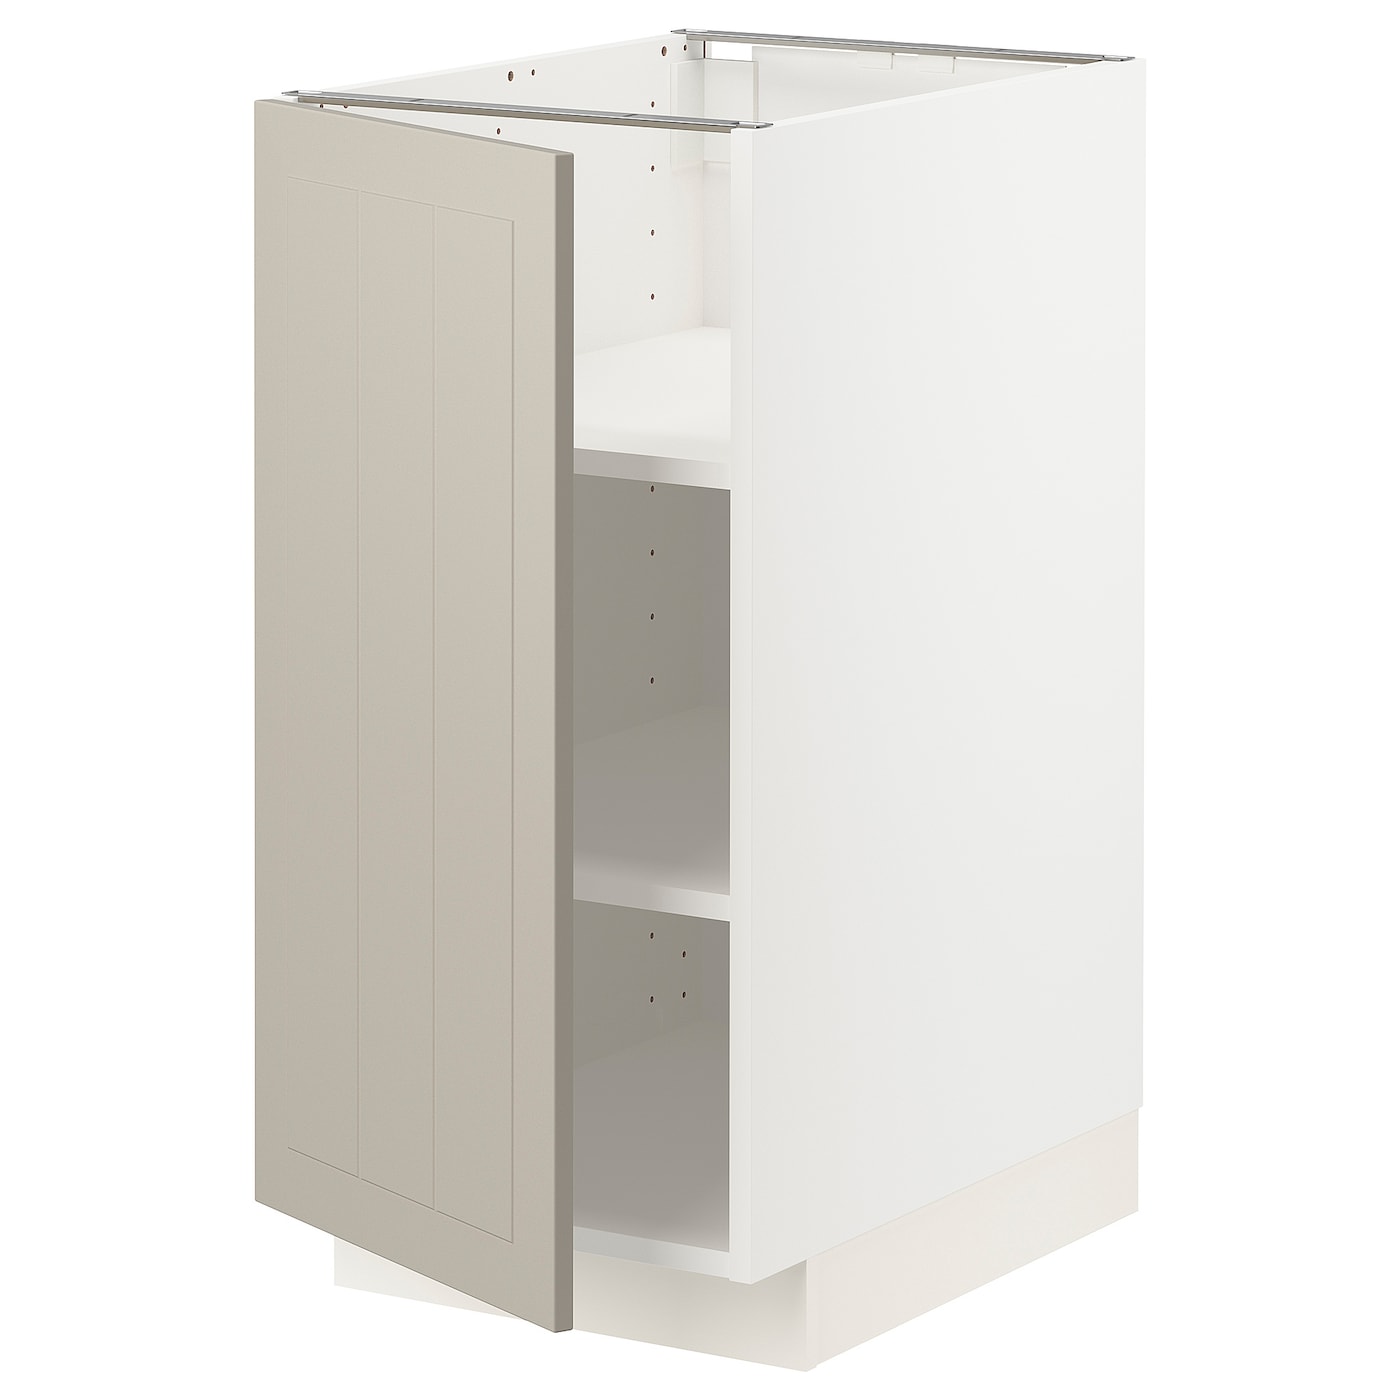 Напольный шкаф - IKEA METOD, 88x62x40см, белый/темно-бежевый, МЕТОД ИКЕА